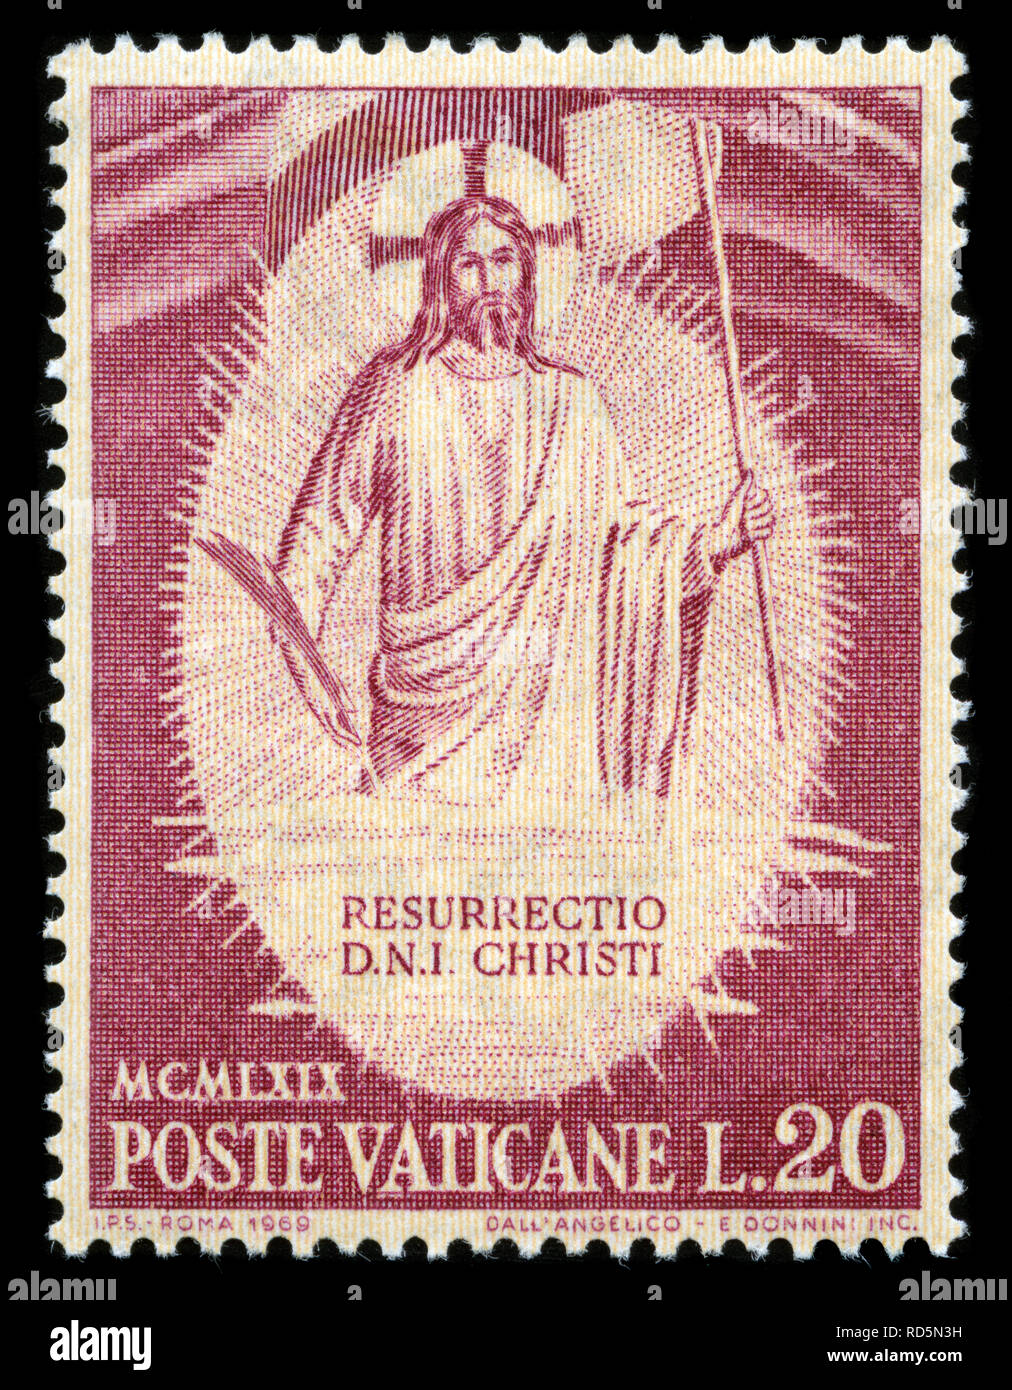 Francobollo da Città del Vaticano nella risurrezione serie rilasciato in  1969 Foto stock - Alamy